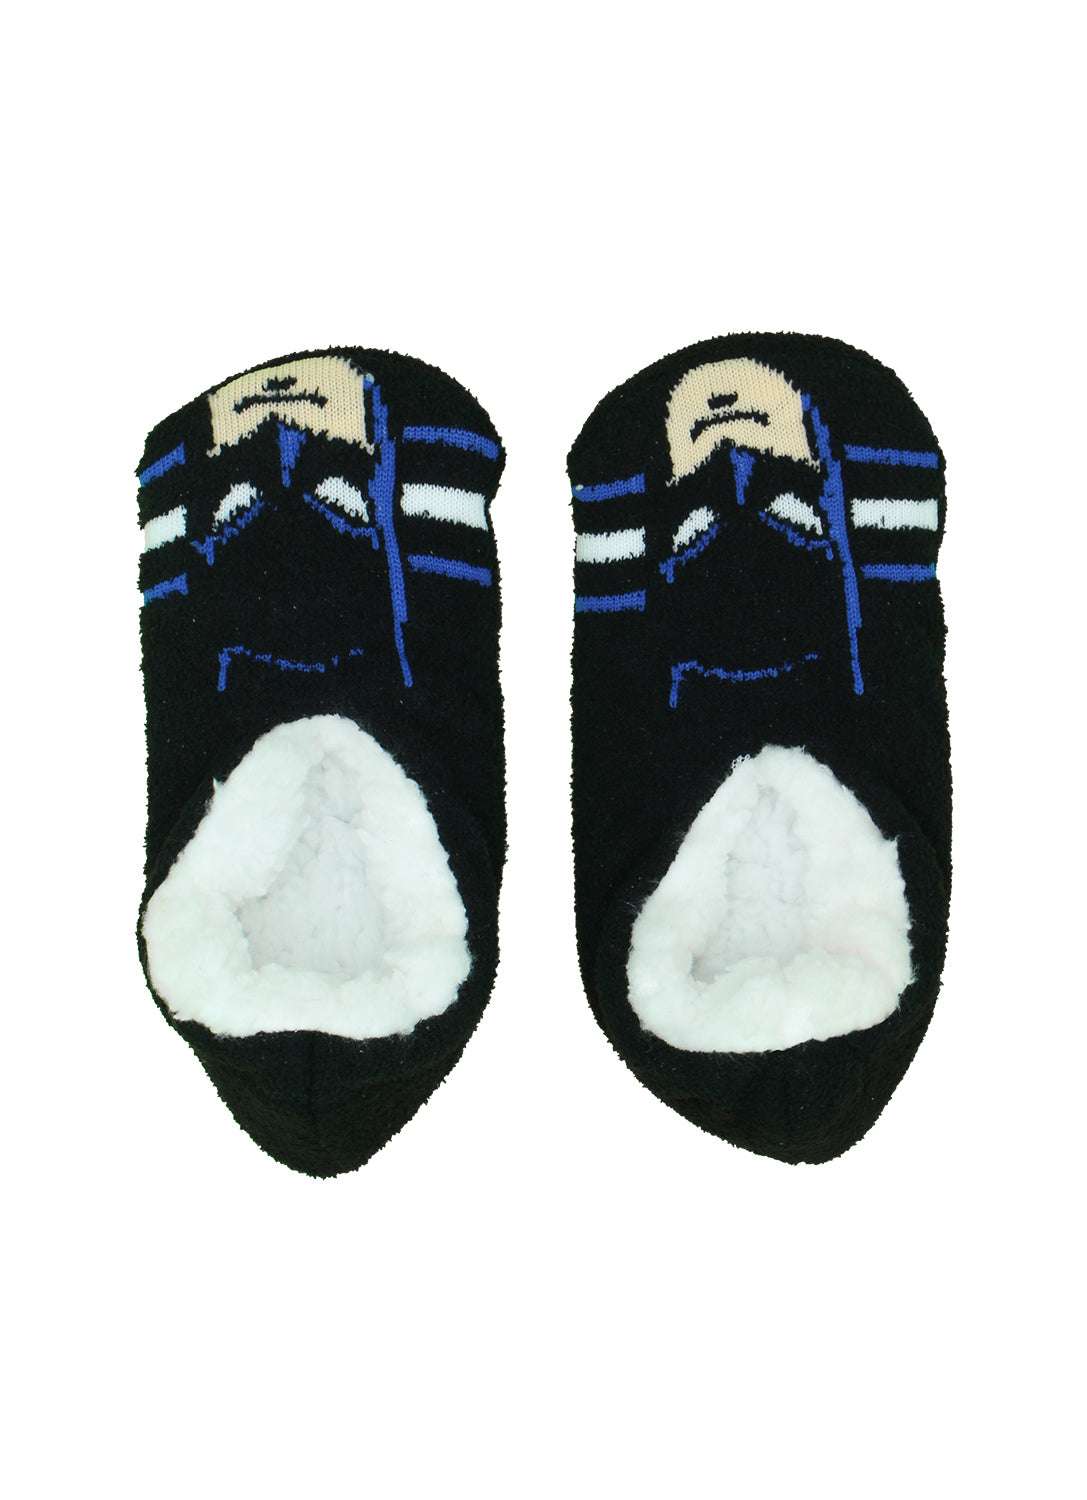 Boys Batman Slippers Socks - 2 Pack